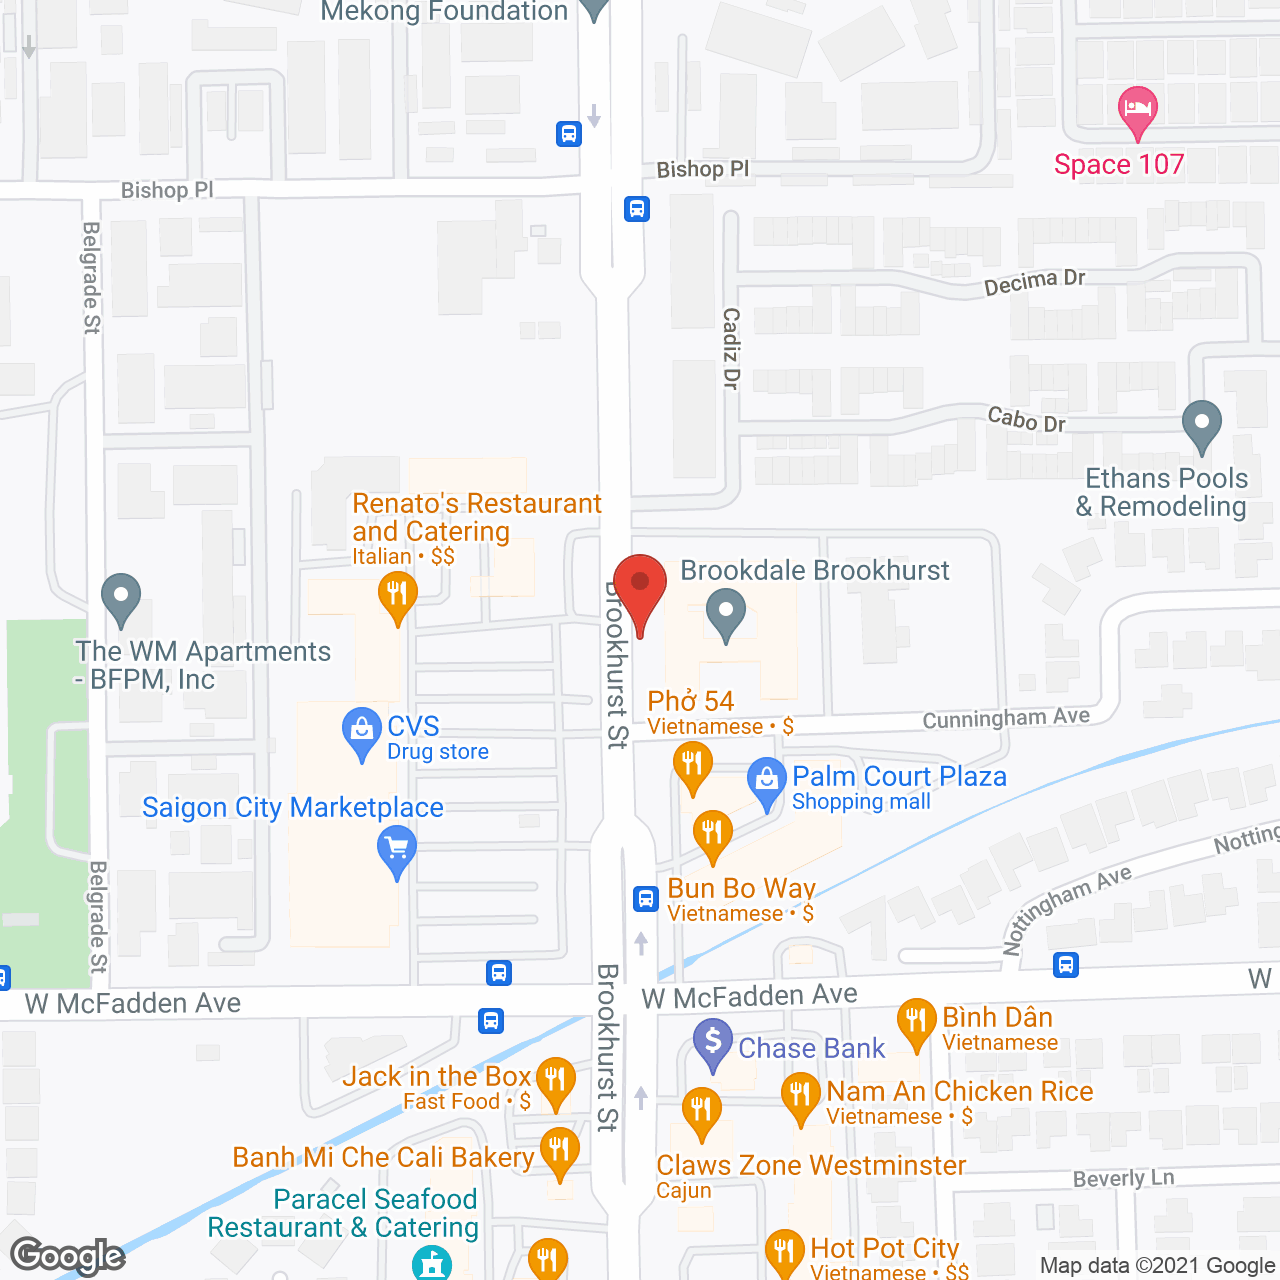 Brookdale Brookhurst in google map